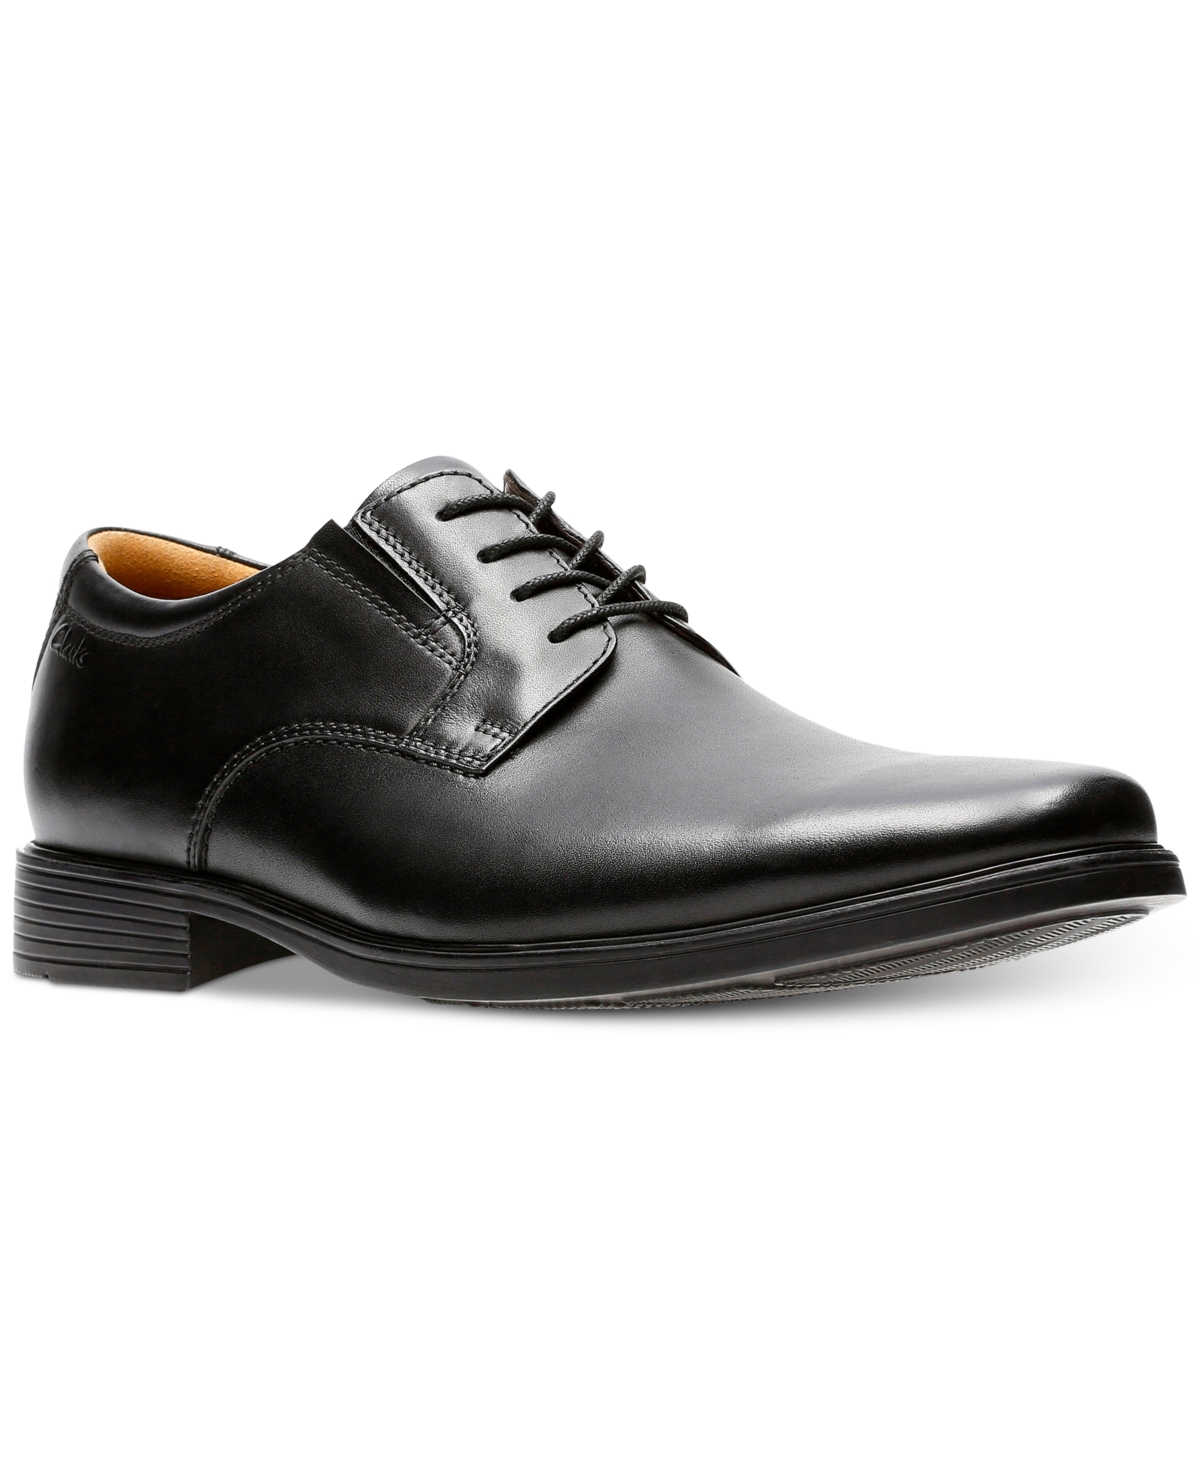 Collection Men's Tilden Plain-Toe Oxford Dress Shoes - Black Leather